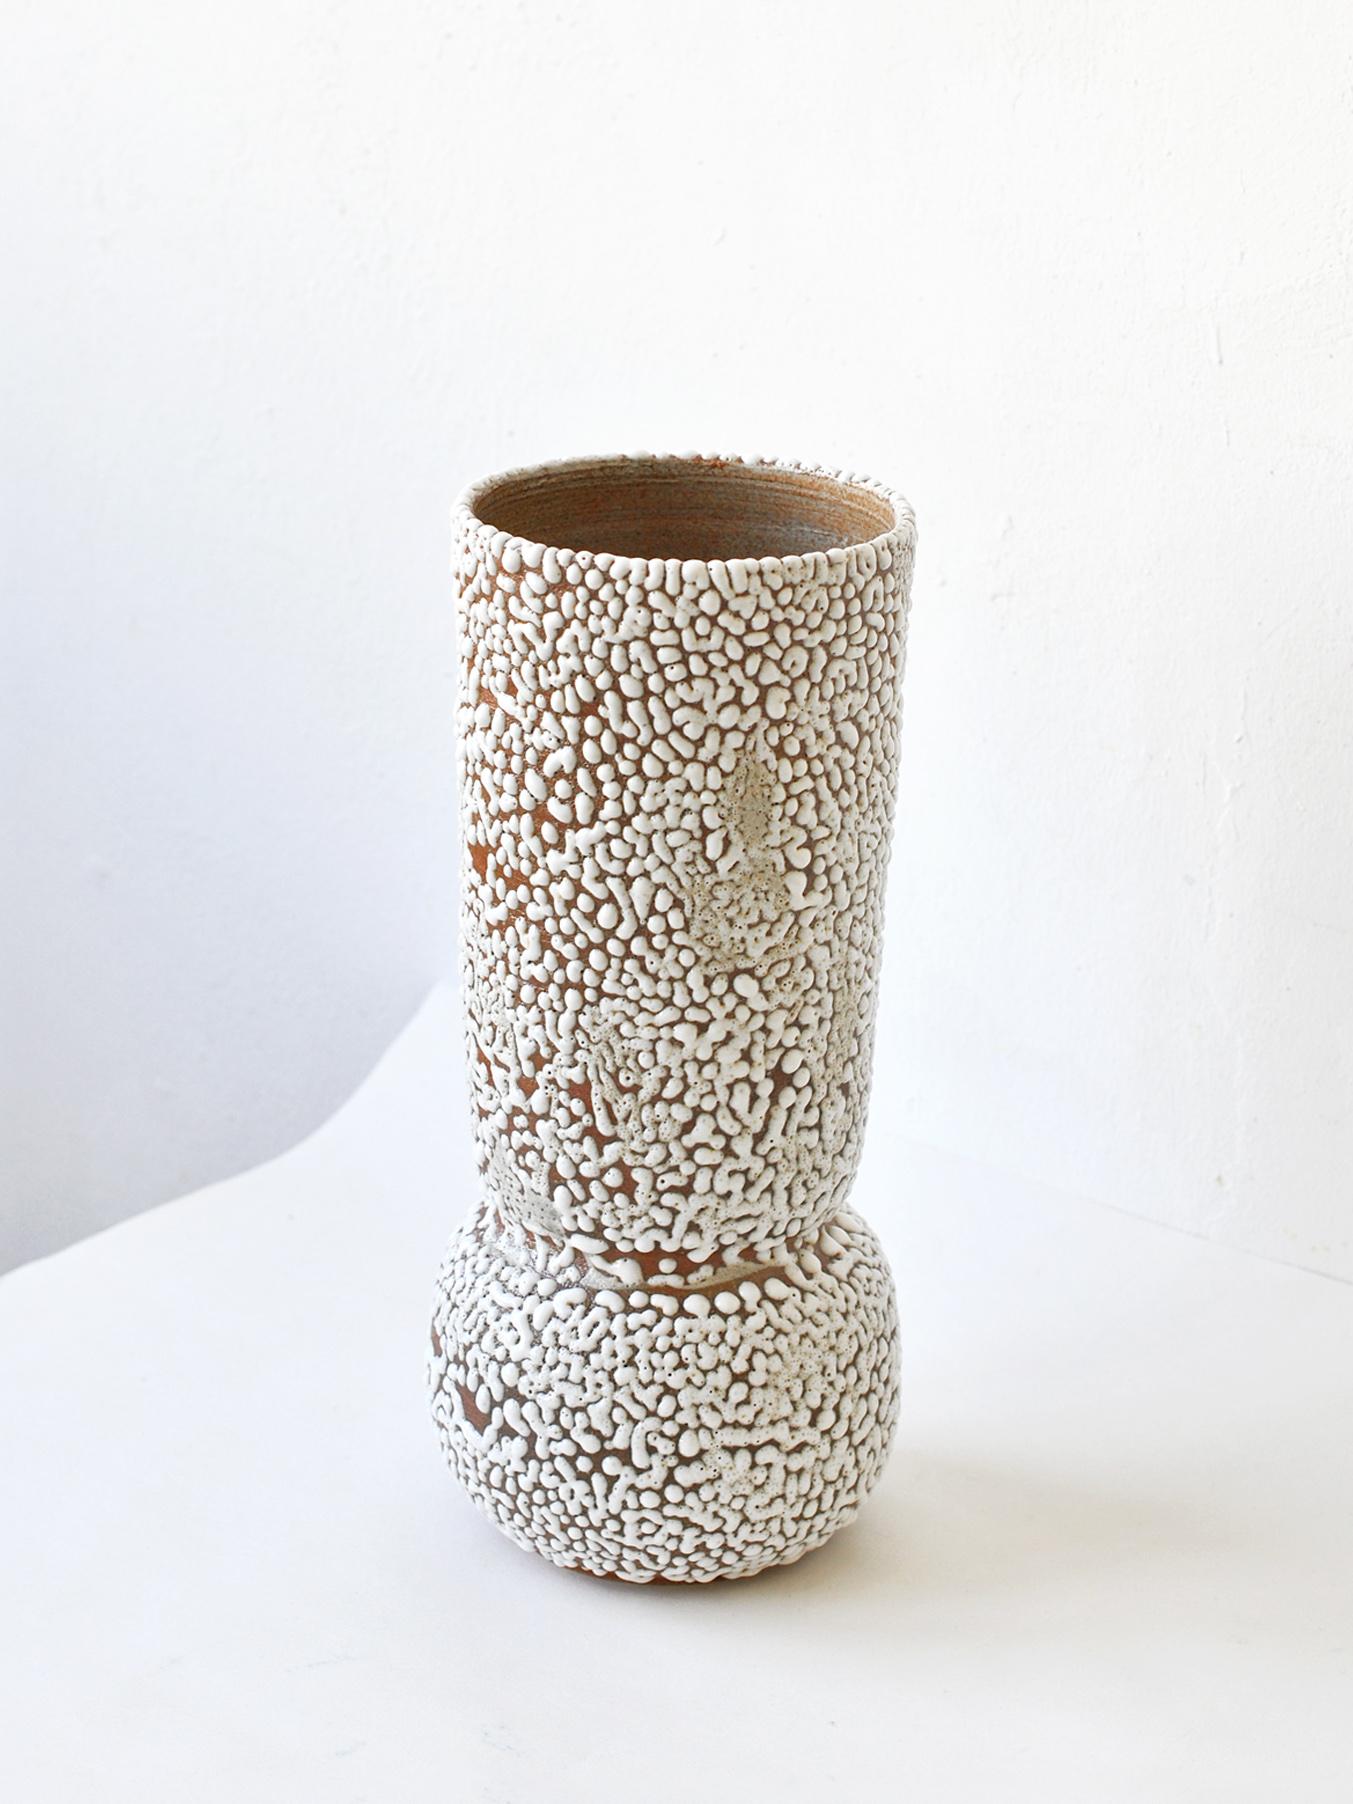 Contemporary C-019 White Stoneware Vase by Moïo Studio For Sale